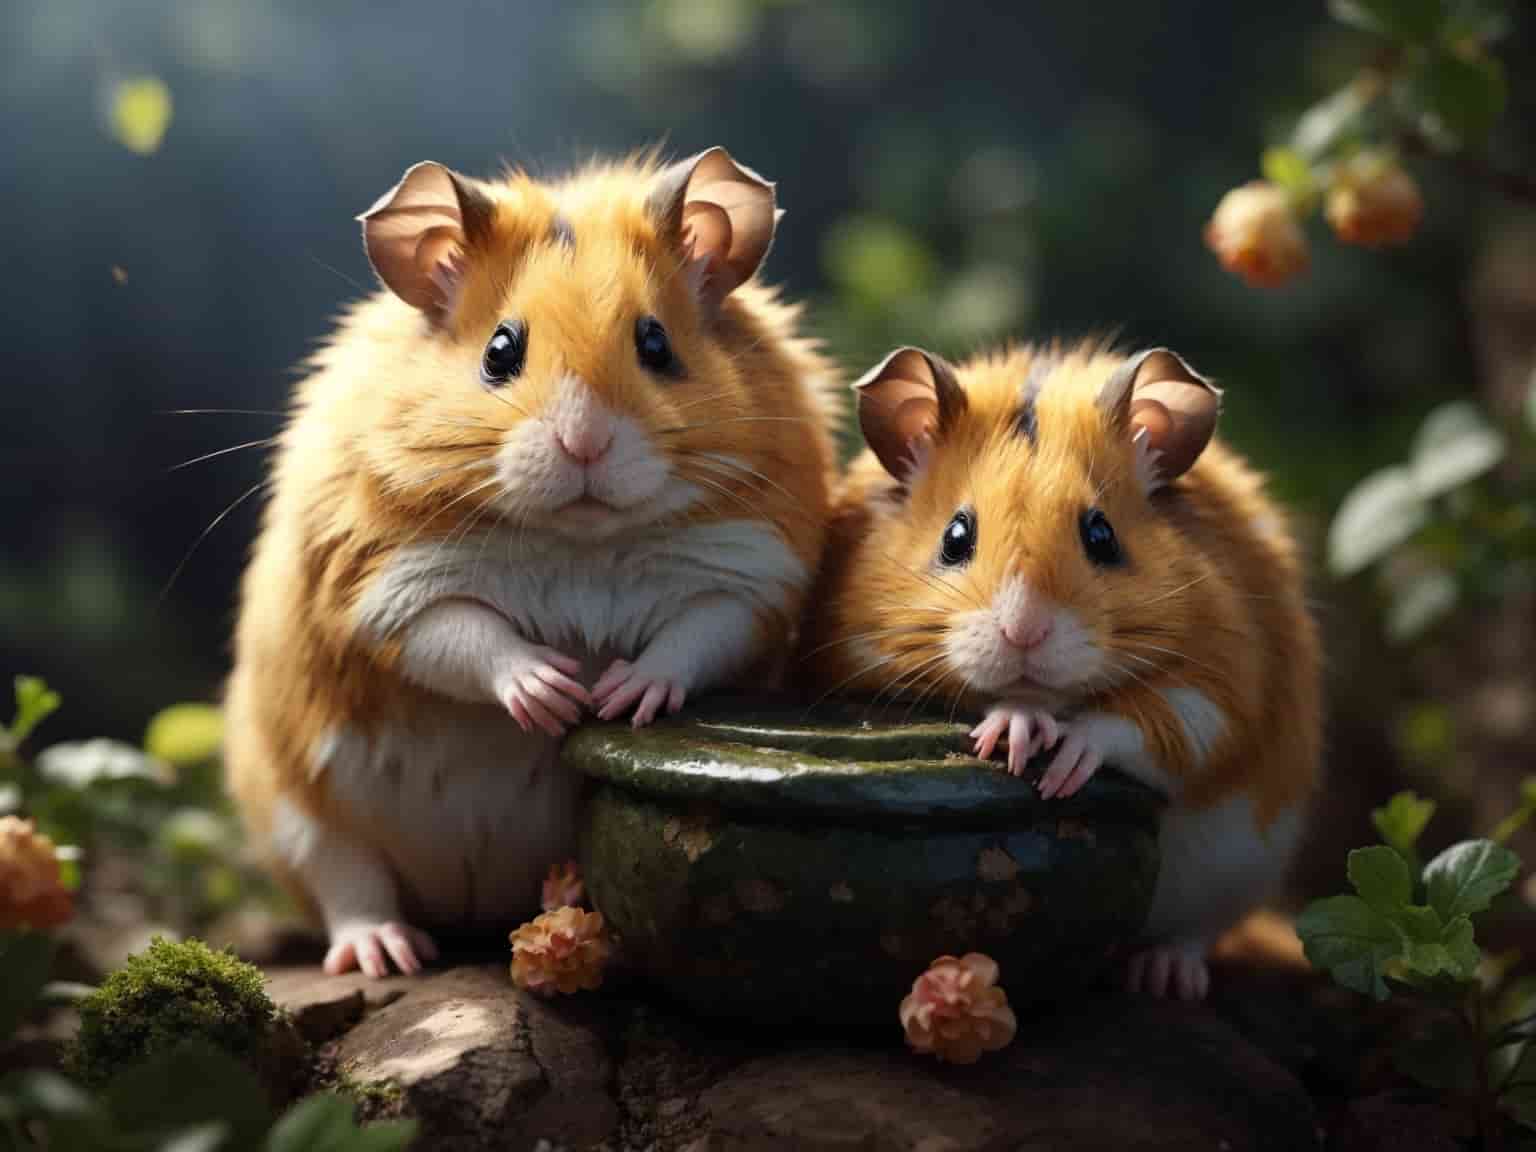 Two beautiful djungarian hamsters